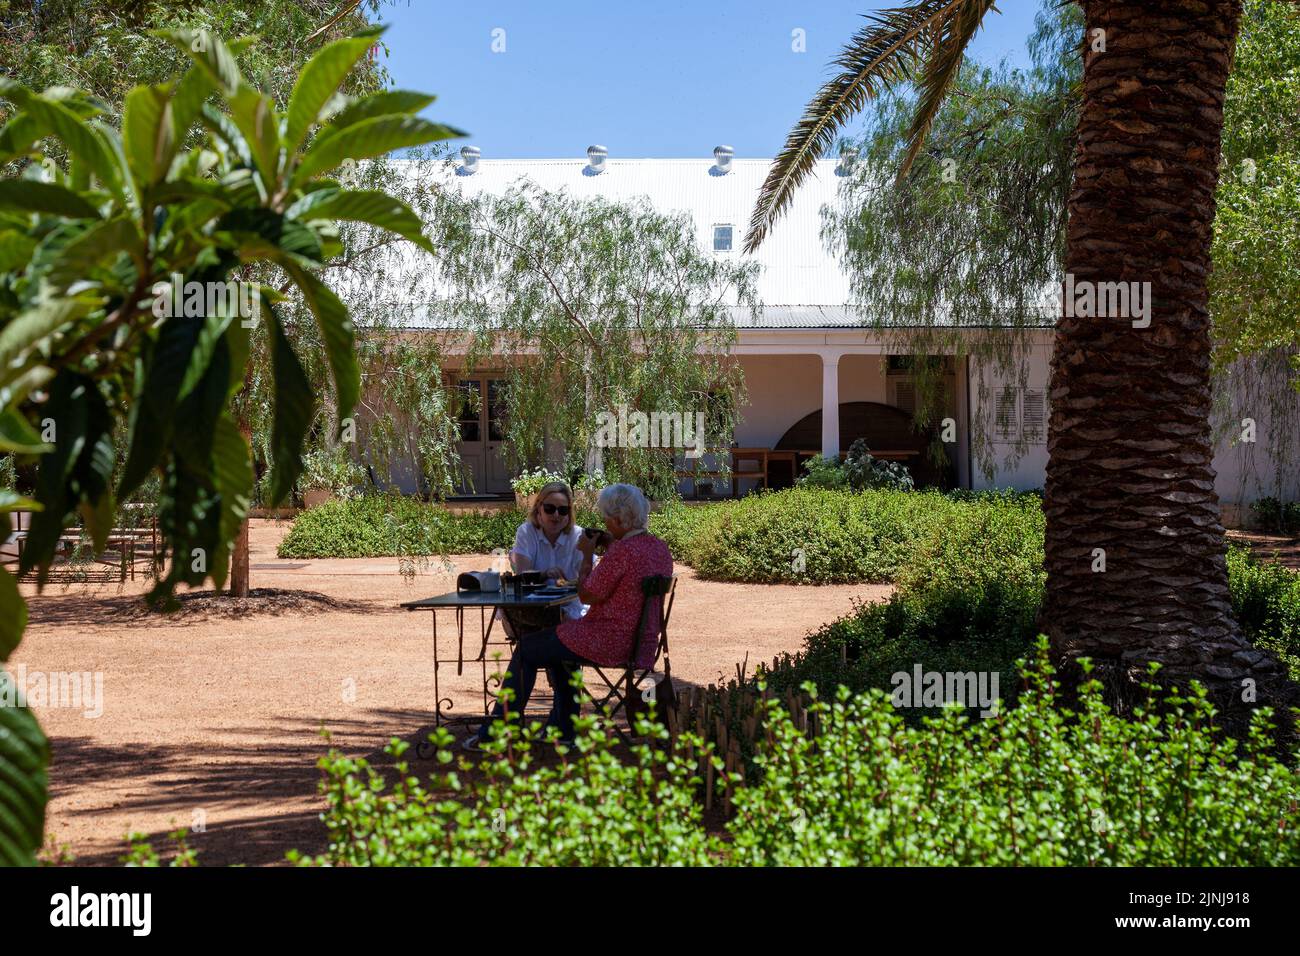 Ou Meul Bakkery Garden Cafe in Simondium, Western Cape - South Africa Stock Photo